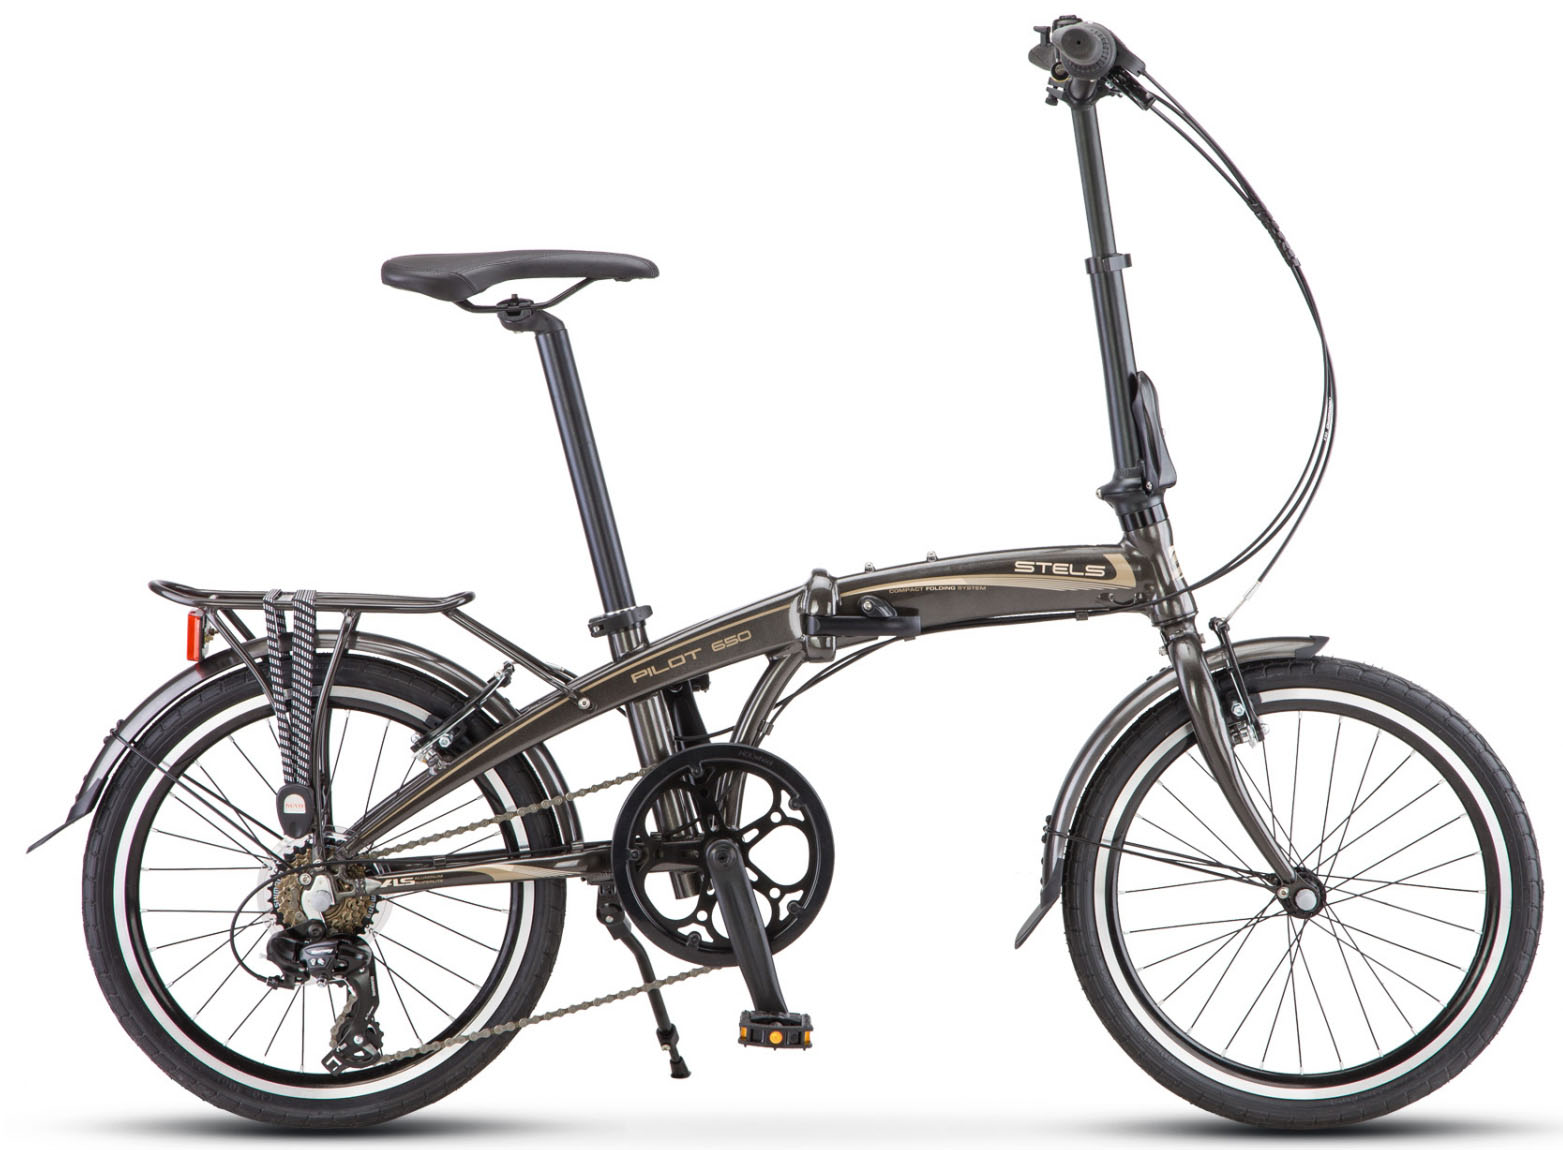  Отзывы о Складном велосипеде Stels Pilot 650 20 V010 2019